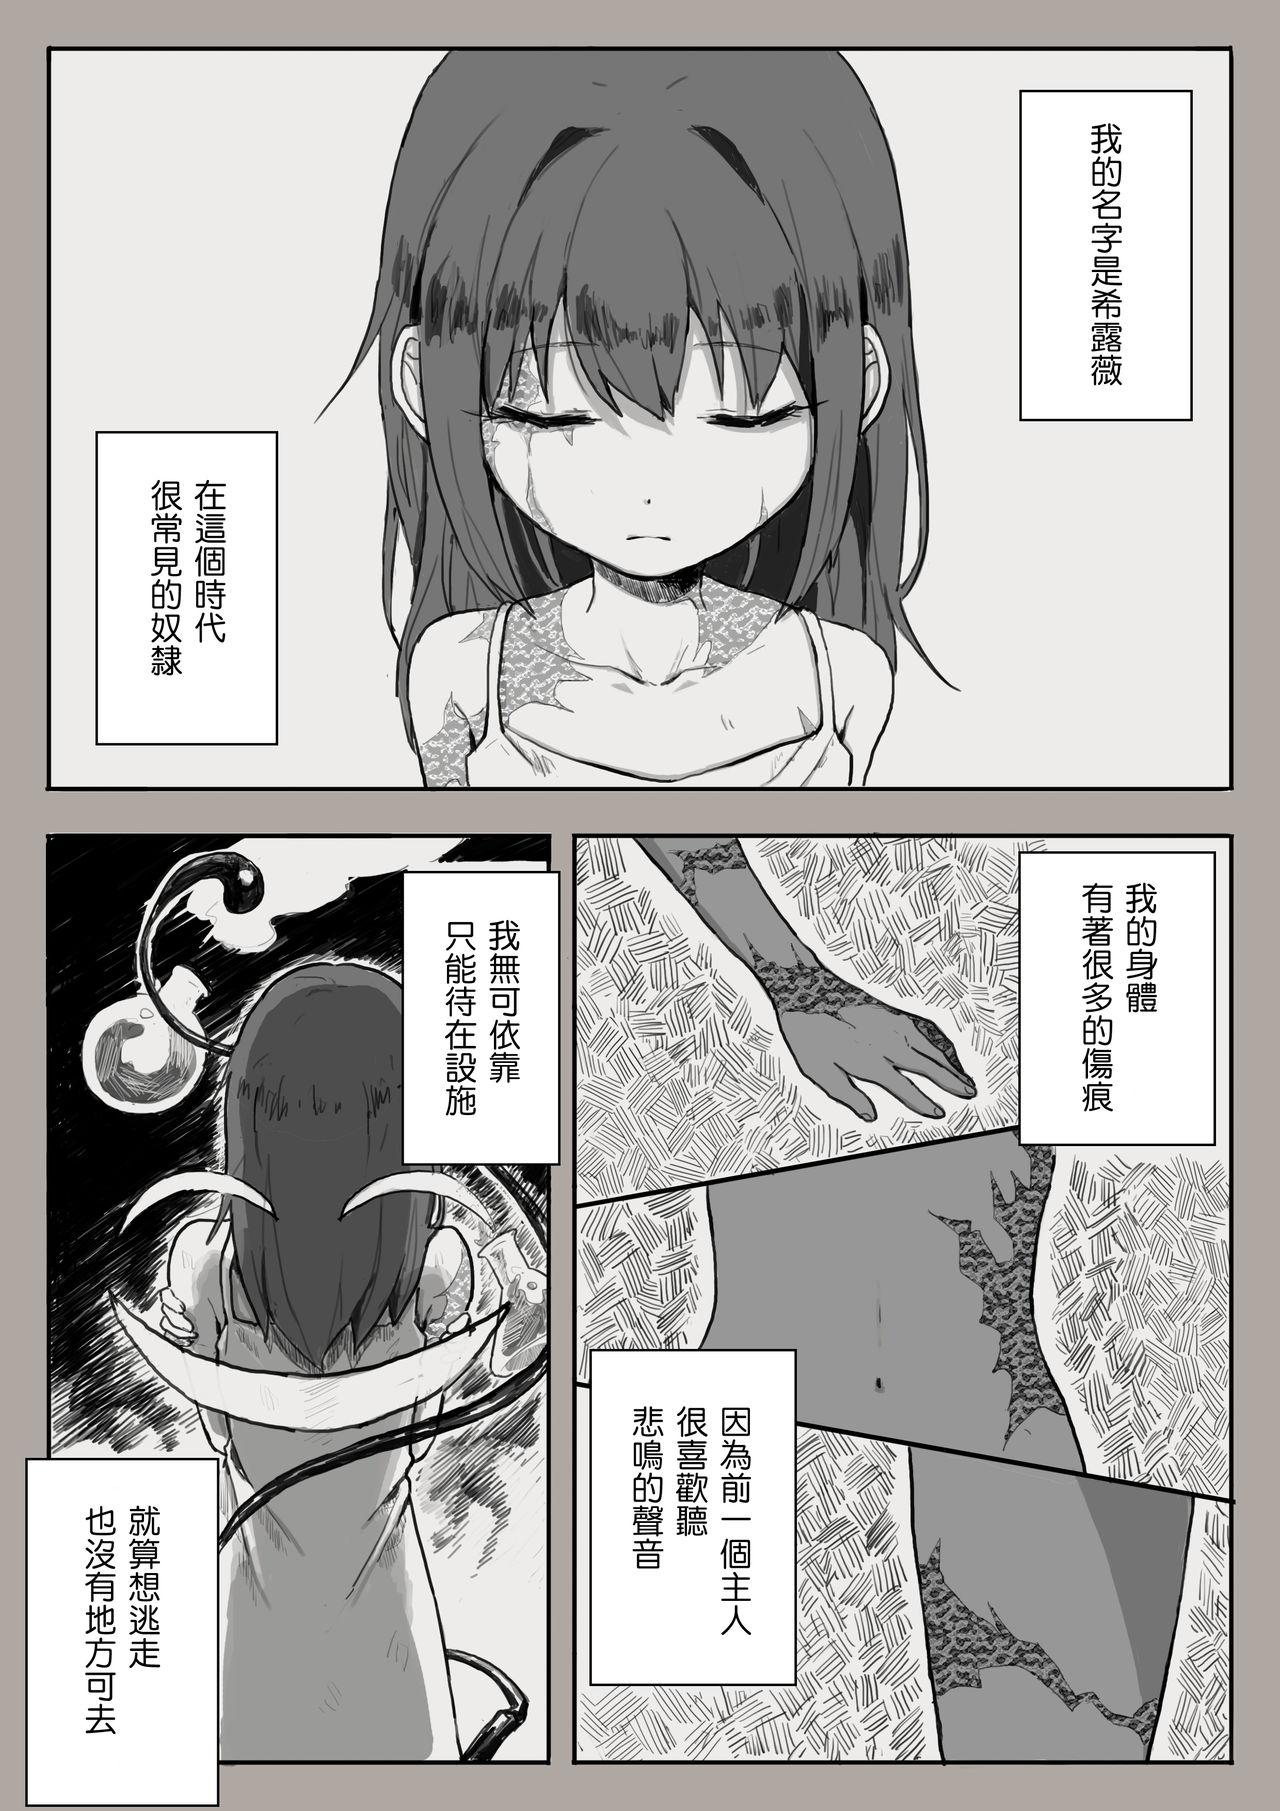 Amature Porn Dorei to no Seikatsu Iwai Nishuunen "Anata to Deaete" - Dorei to no seikatsu Weird - Page 1